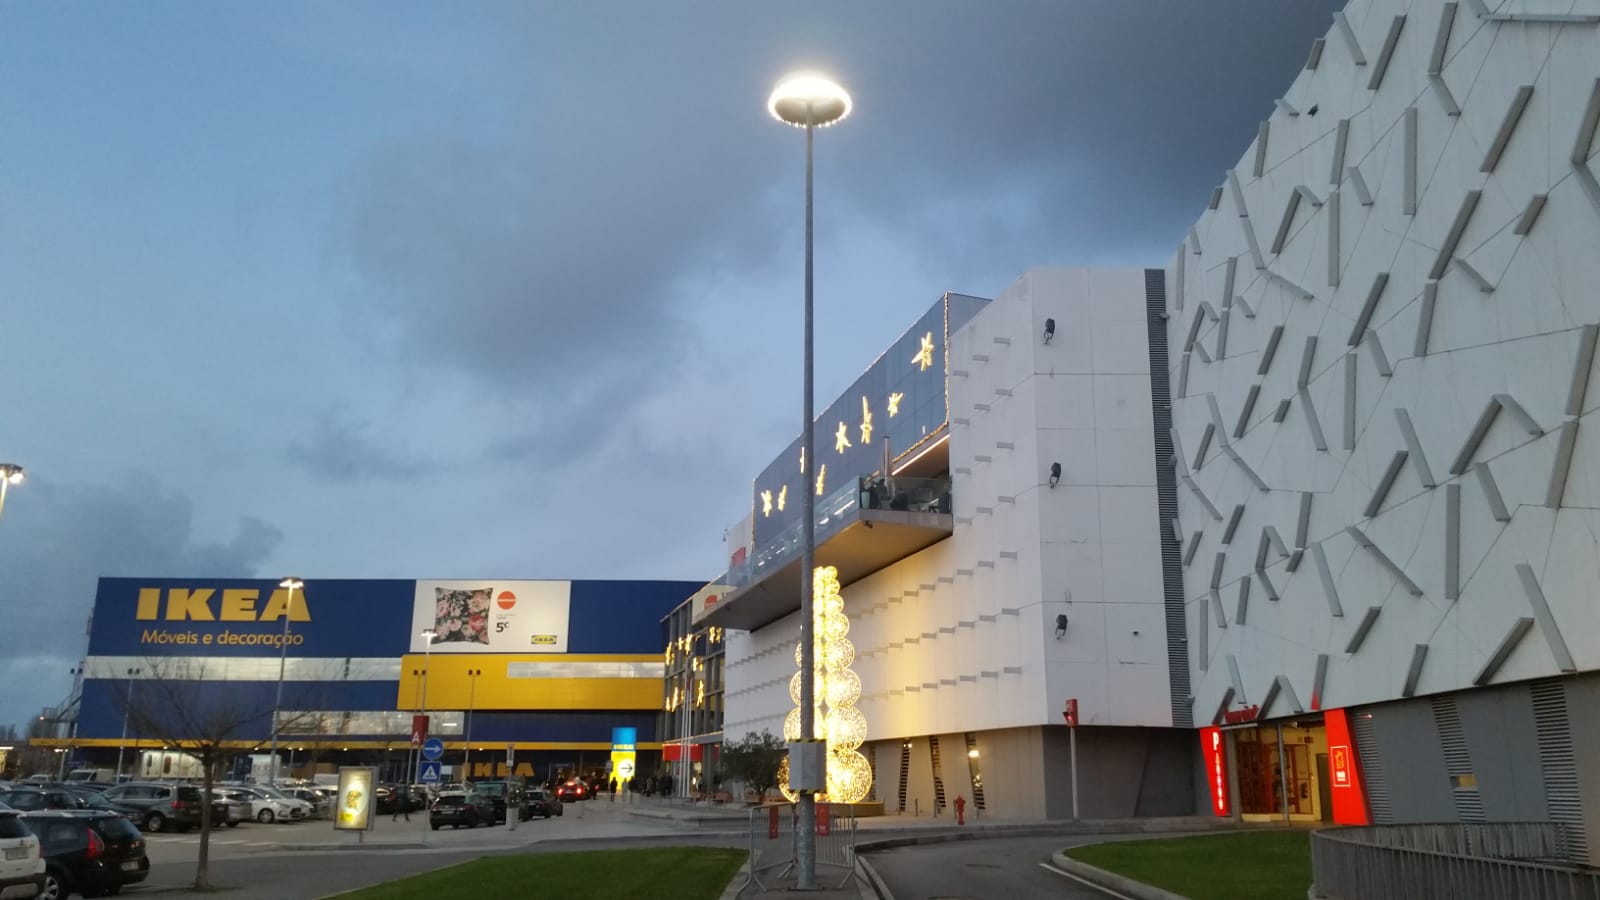 El centro comercial de Matosinhos reduce el consumo de energía en un 94% con iluminación inteligente